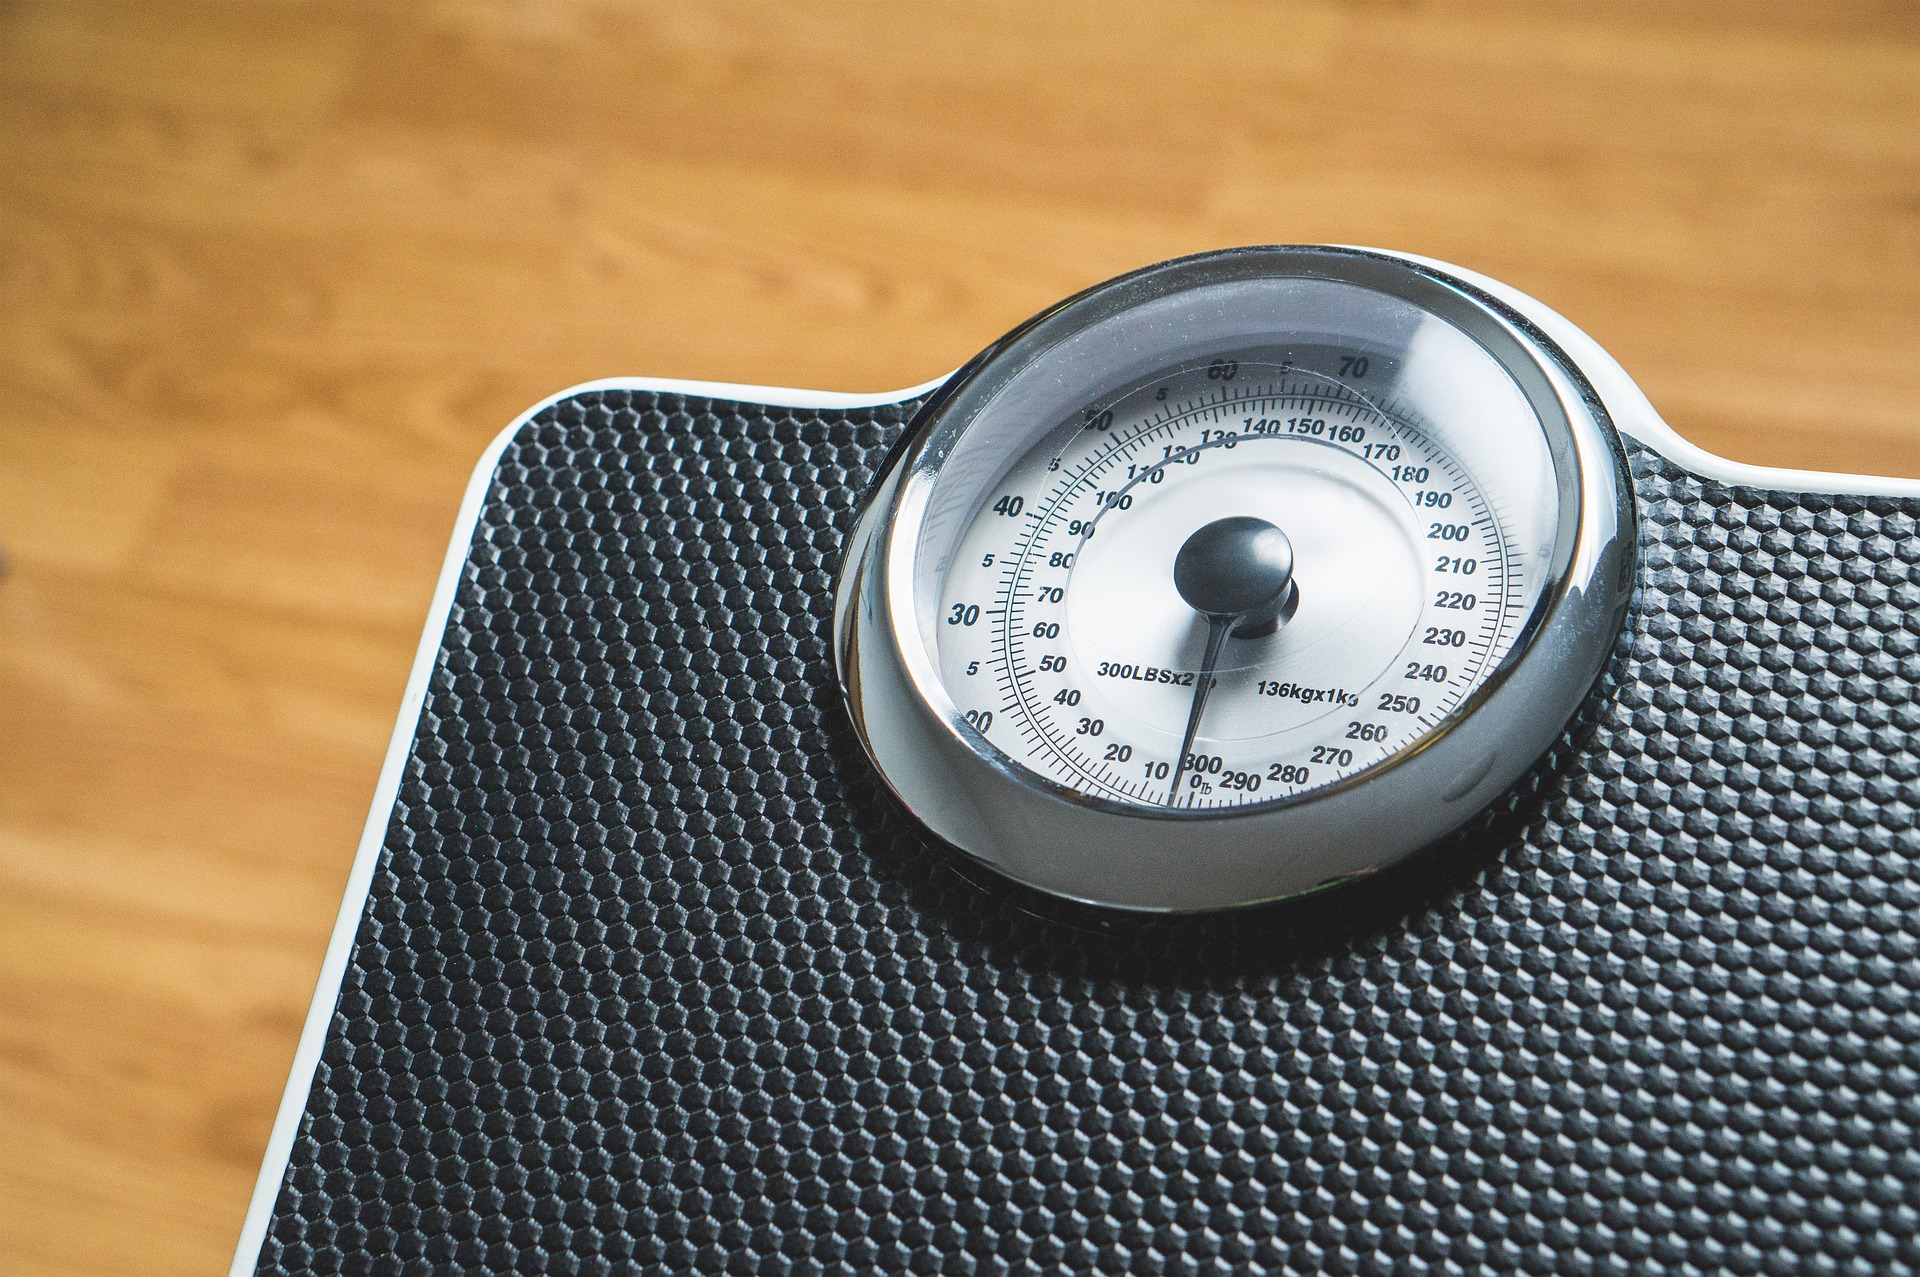 Confronto tra le diete Atkins, Ornish, Weight Watchers e Zona in funzione della perdita di peso e della riduzione del rischio cardiovascolare: studio d’intervento randomizzato.